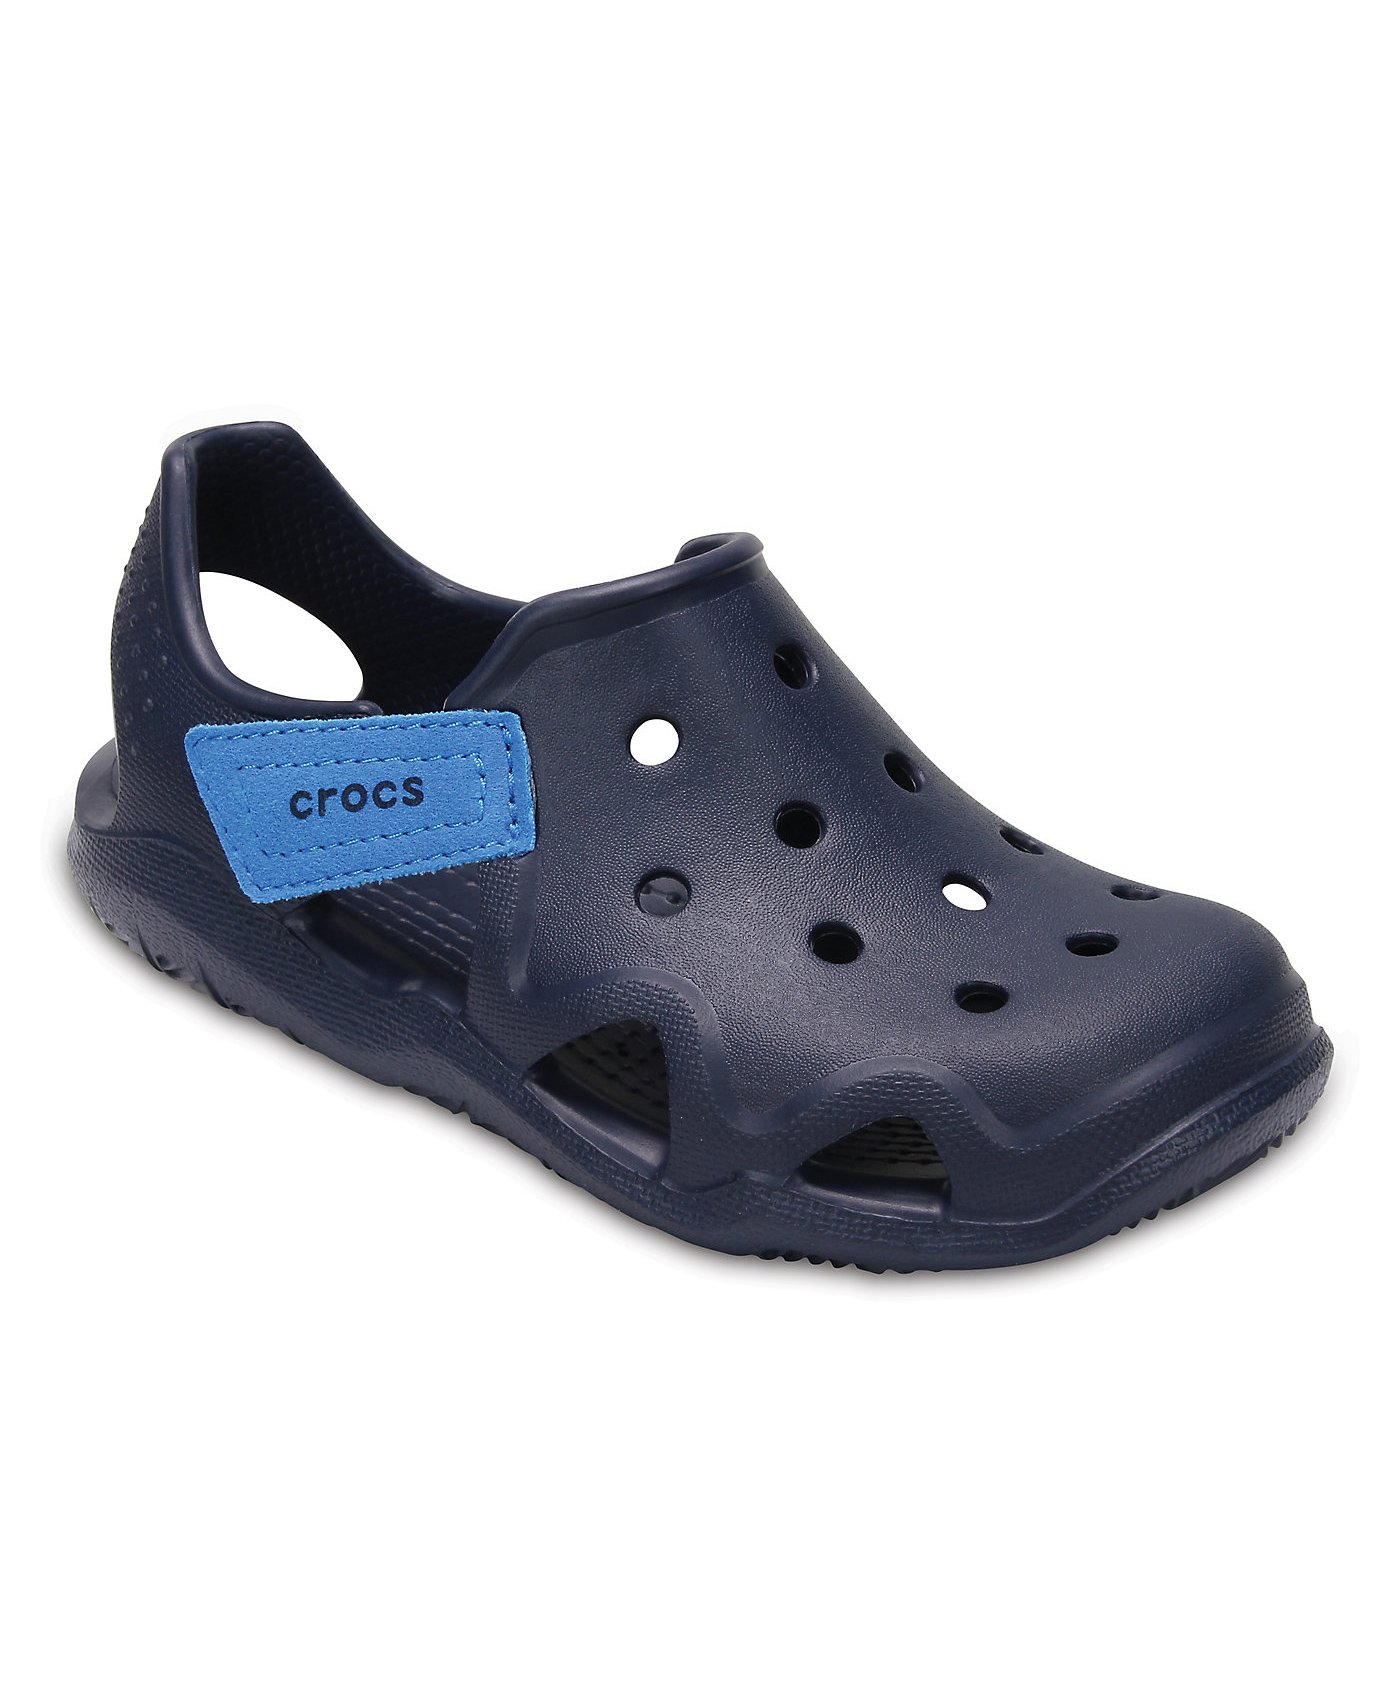 buy crocs swiftwater